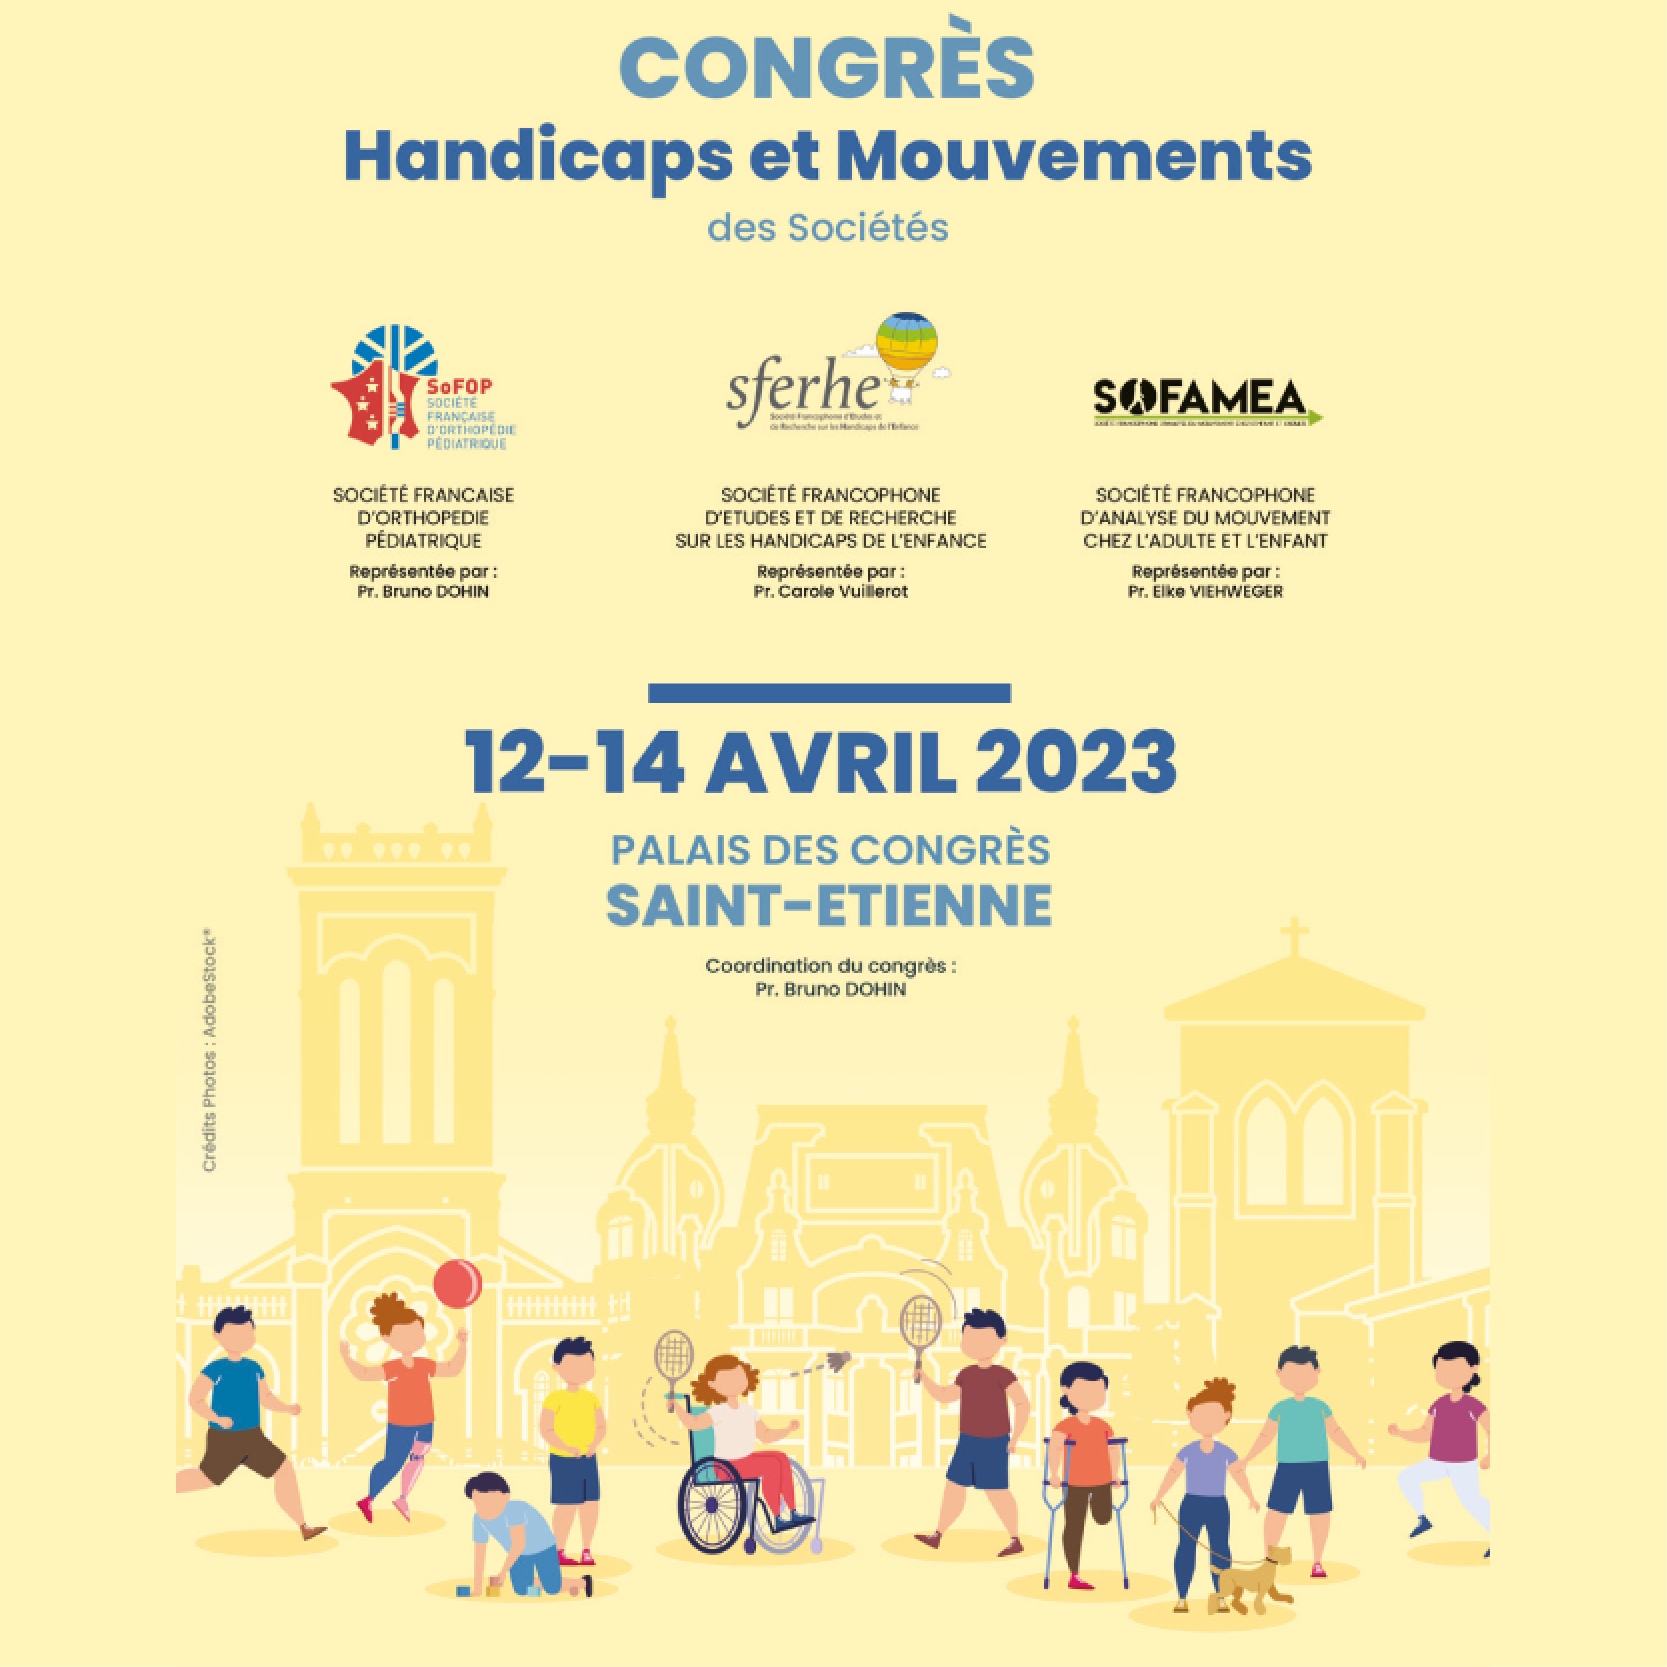 Congrès Handicaps et Mouvements - SOFOP 2023